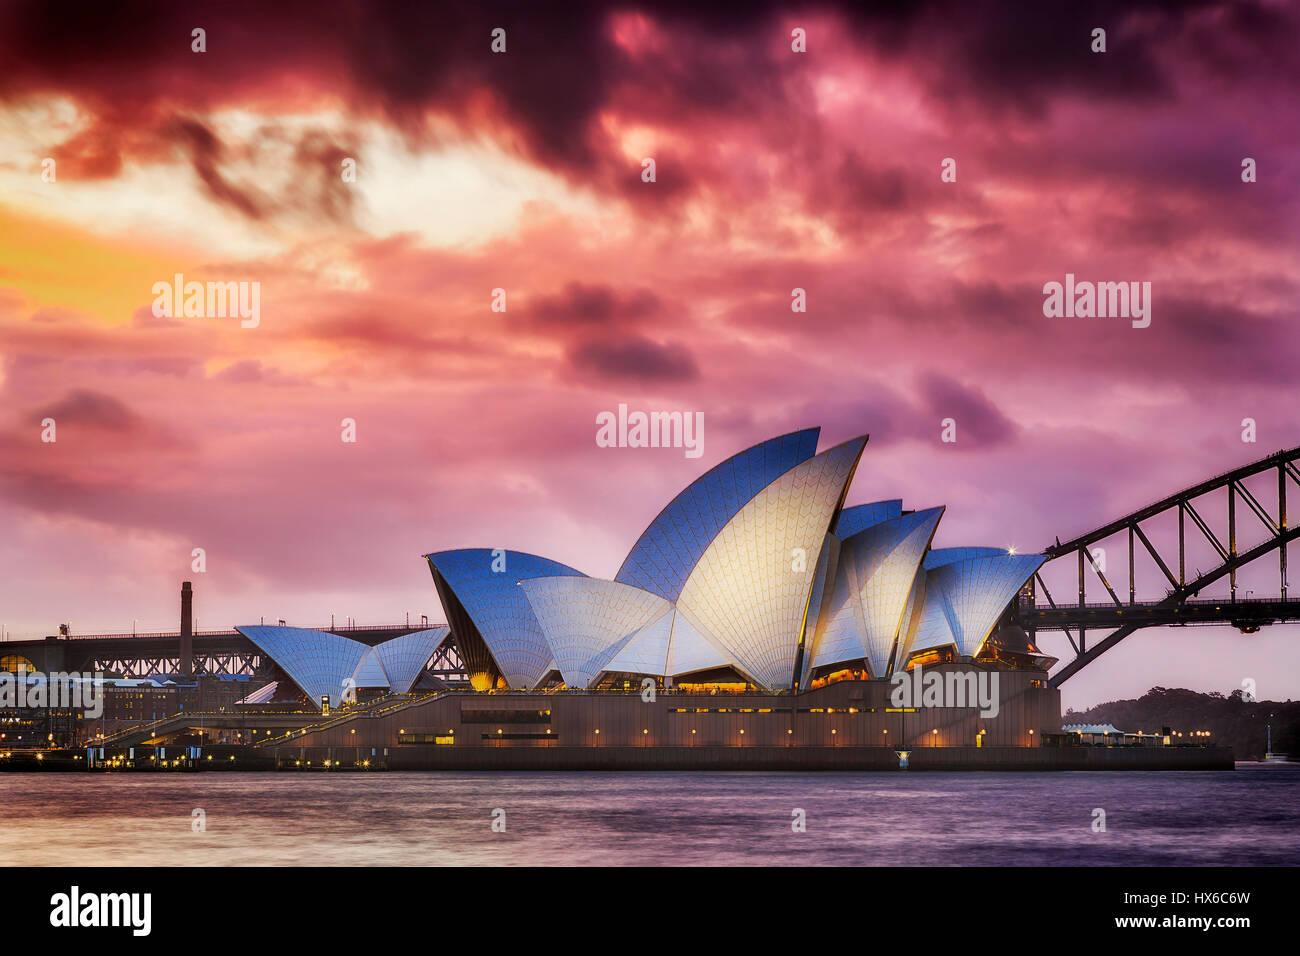 Sydney, Australia - 19 de marzo de 2017: atardecer mágico mundo famosos - Sydney Opera House y el puente Harbour. Vista lateral de la ópera iluminada. Foto de stock